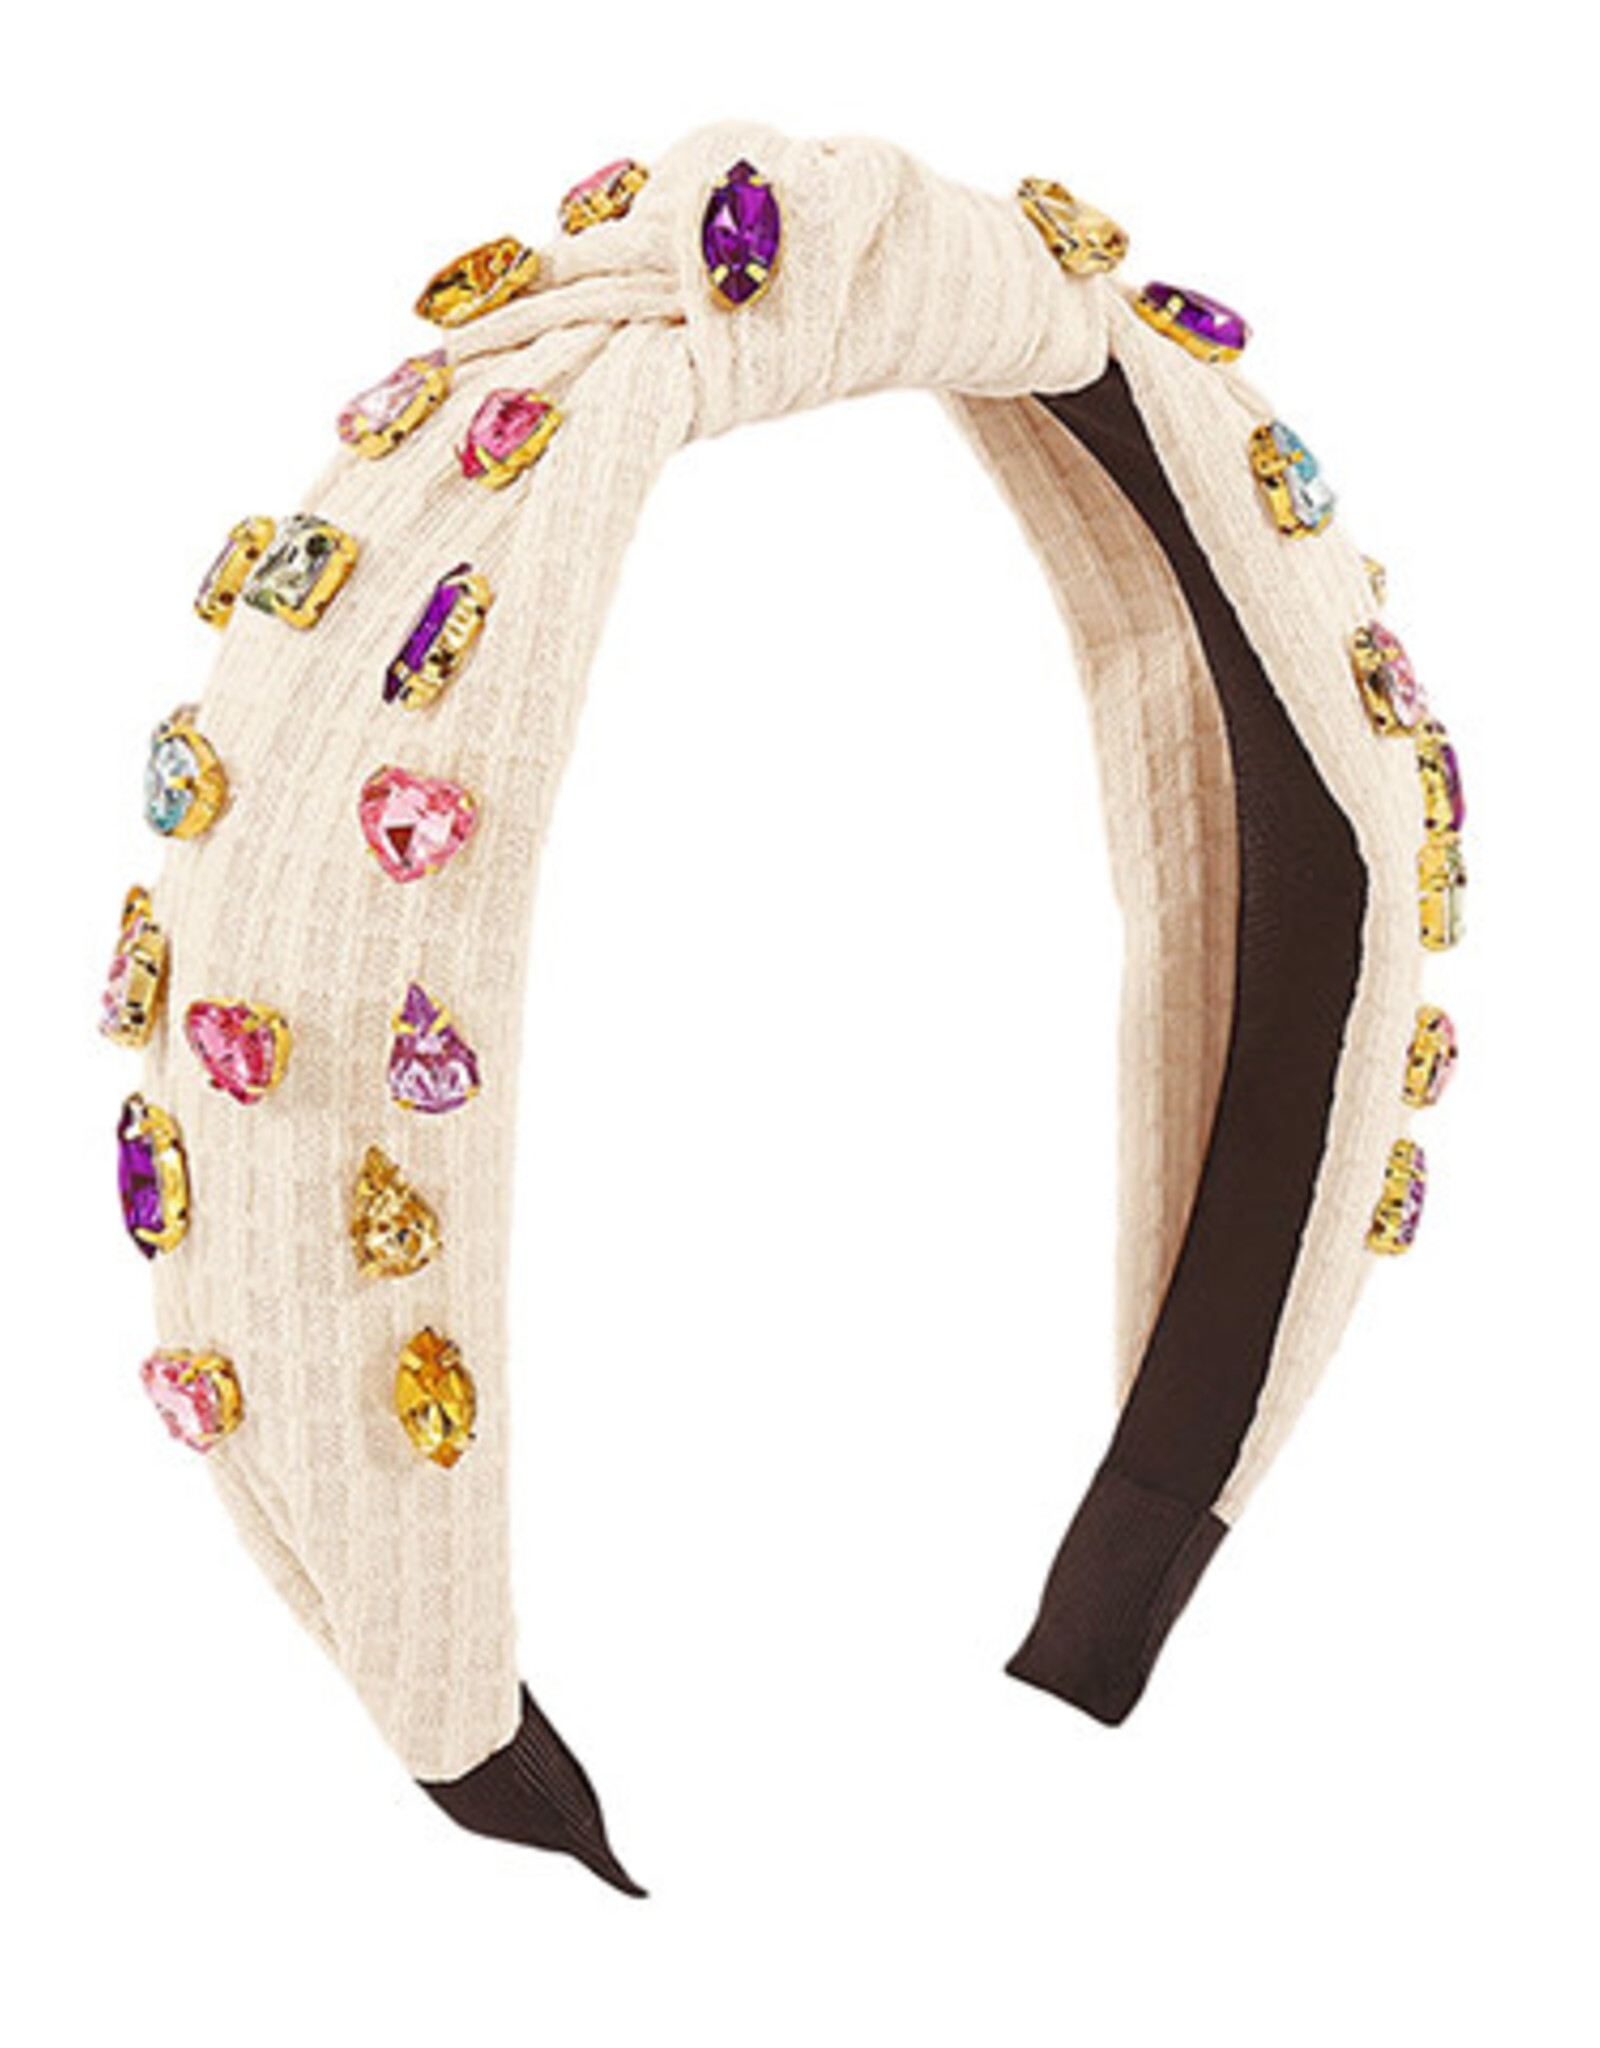 Jewel Knot Headband in Ivory